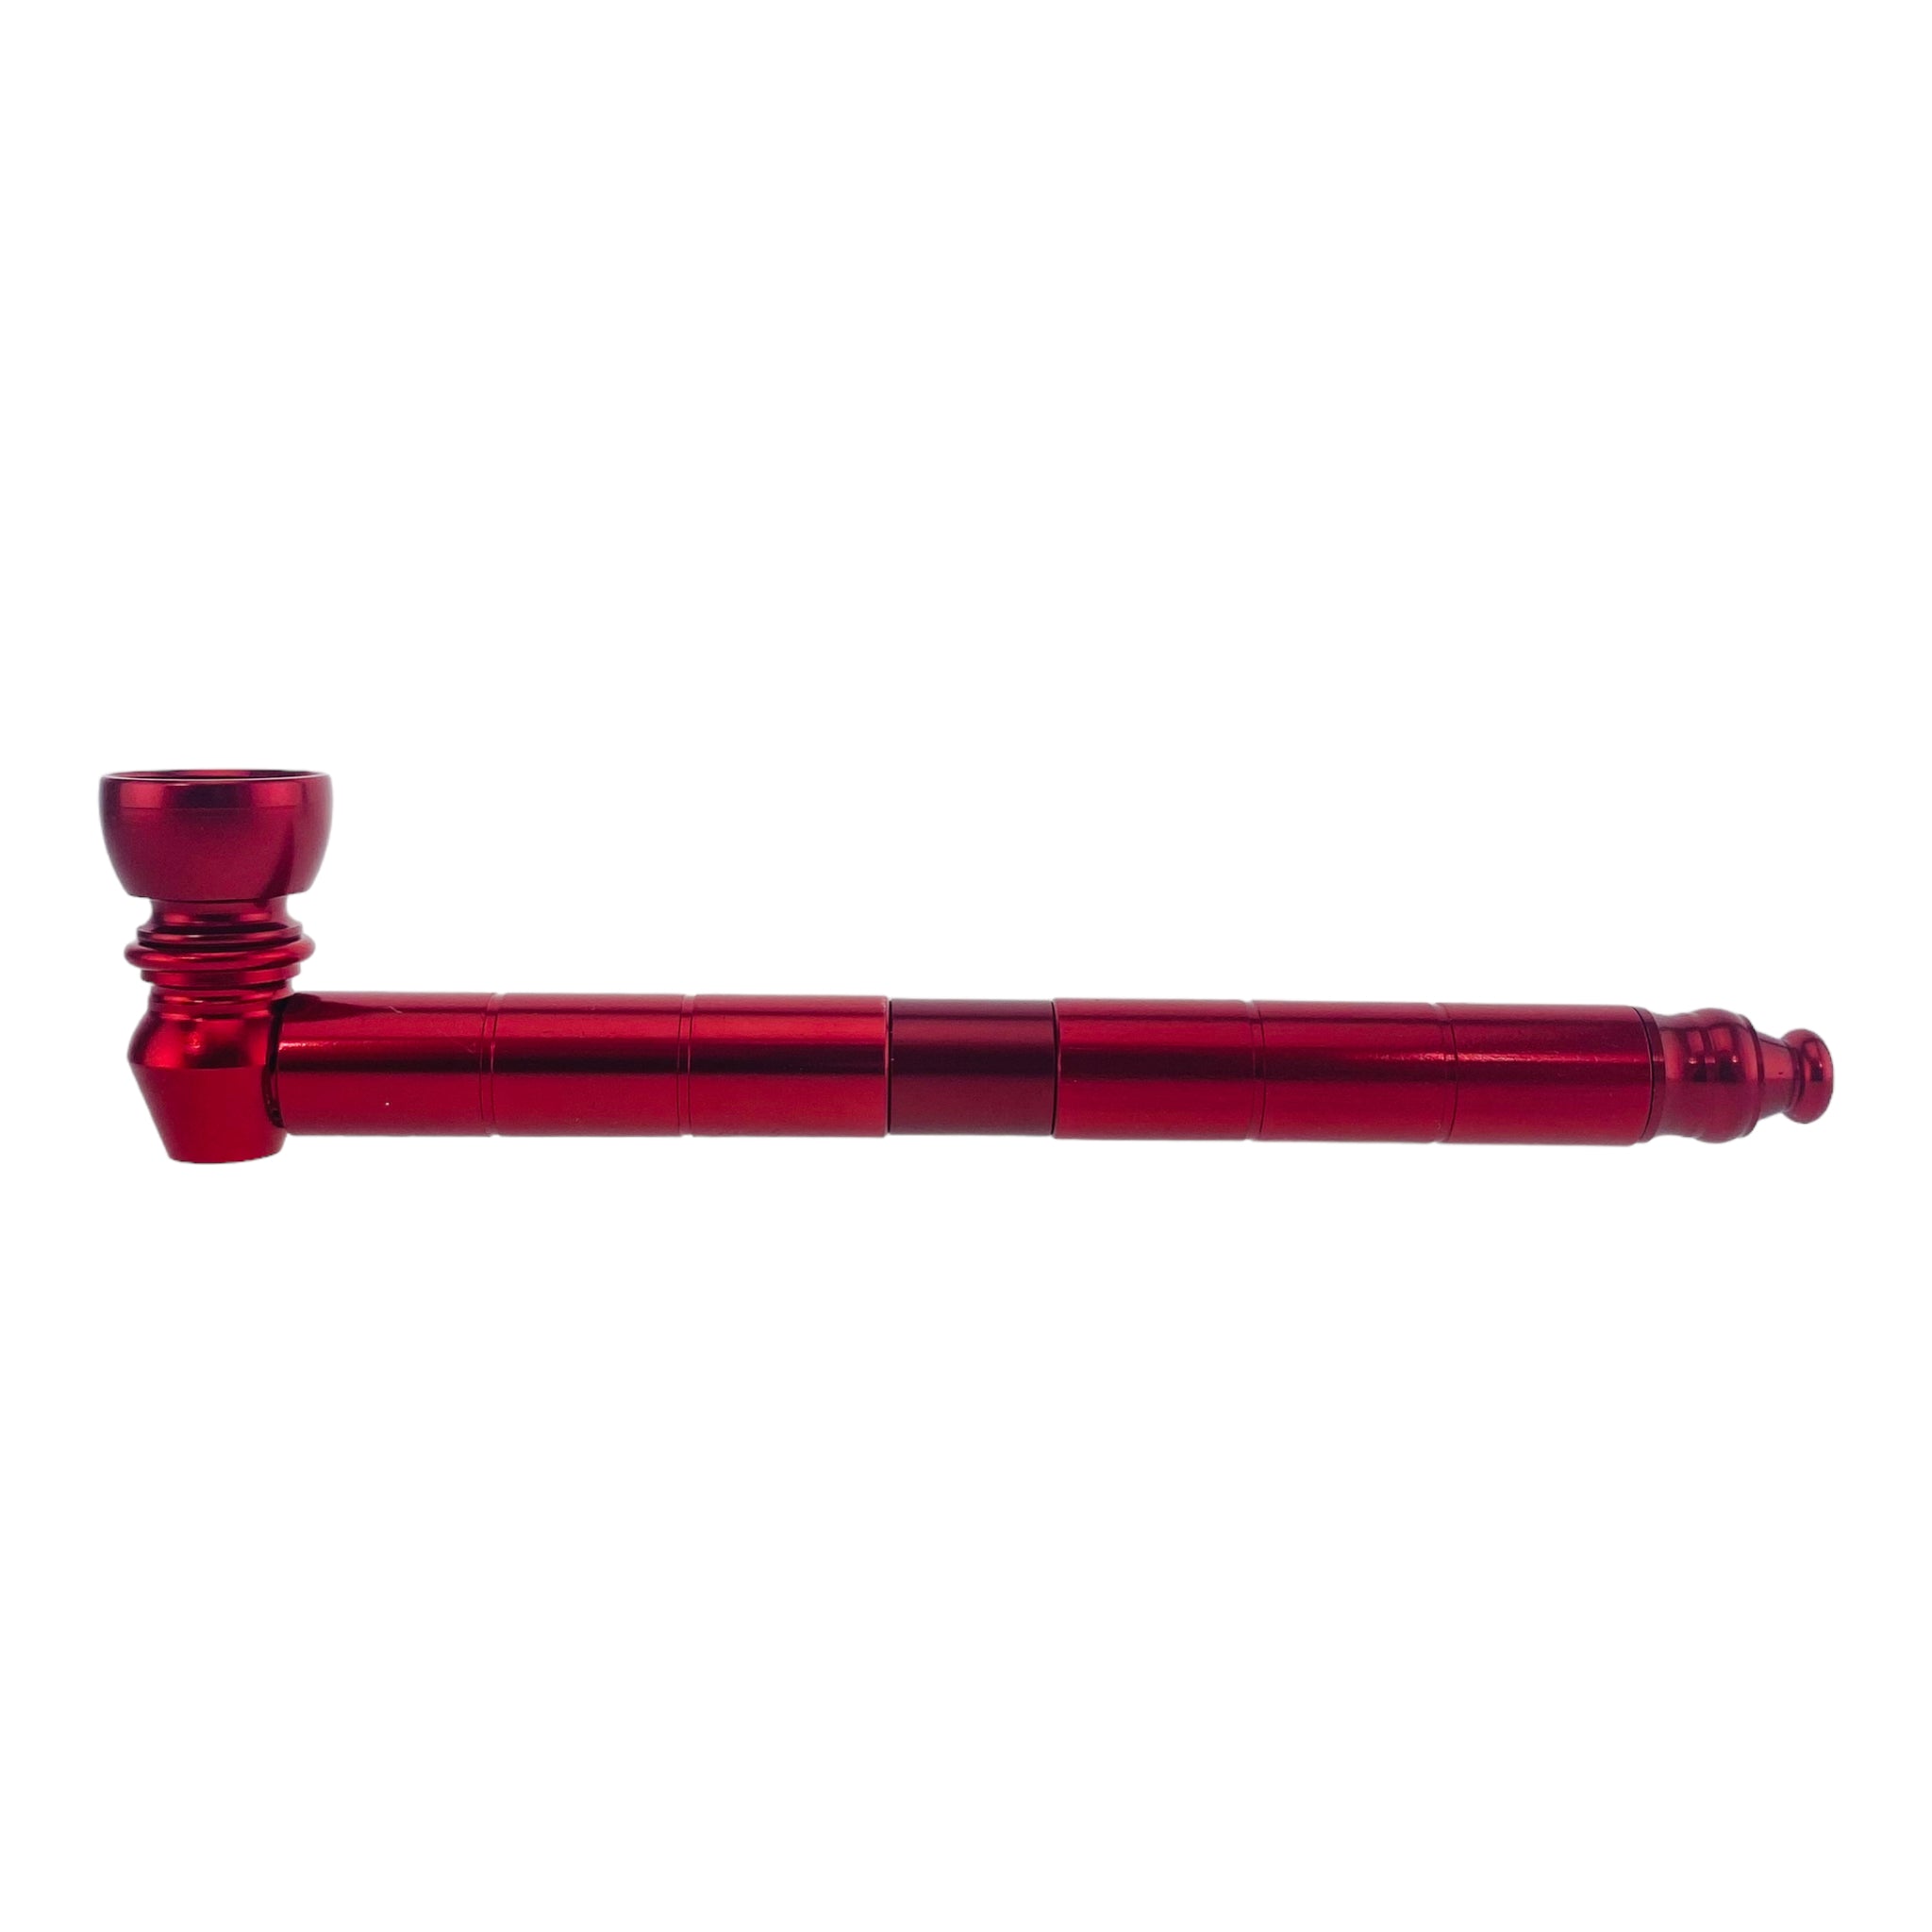 6 inch long Metal Hand Pipes - Red Long Stem Aluminum Metal Pipe